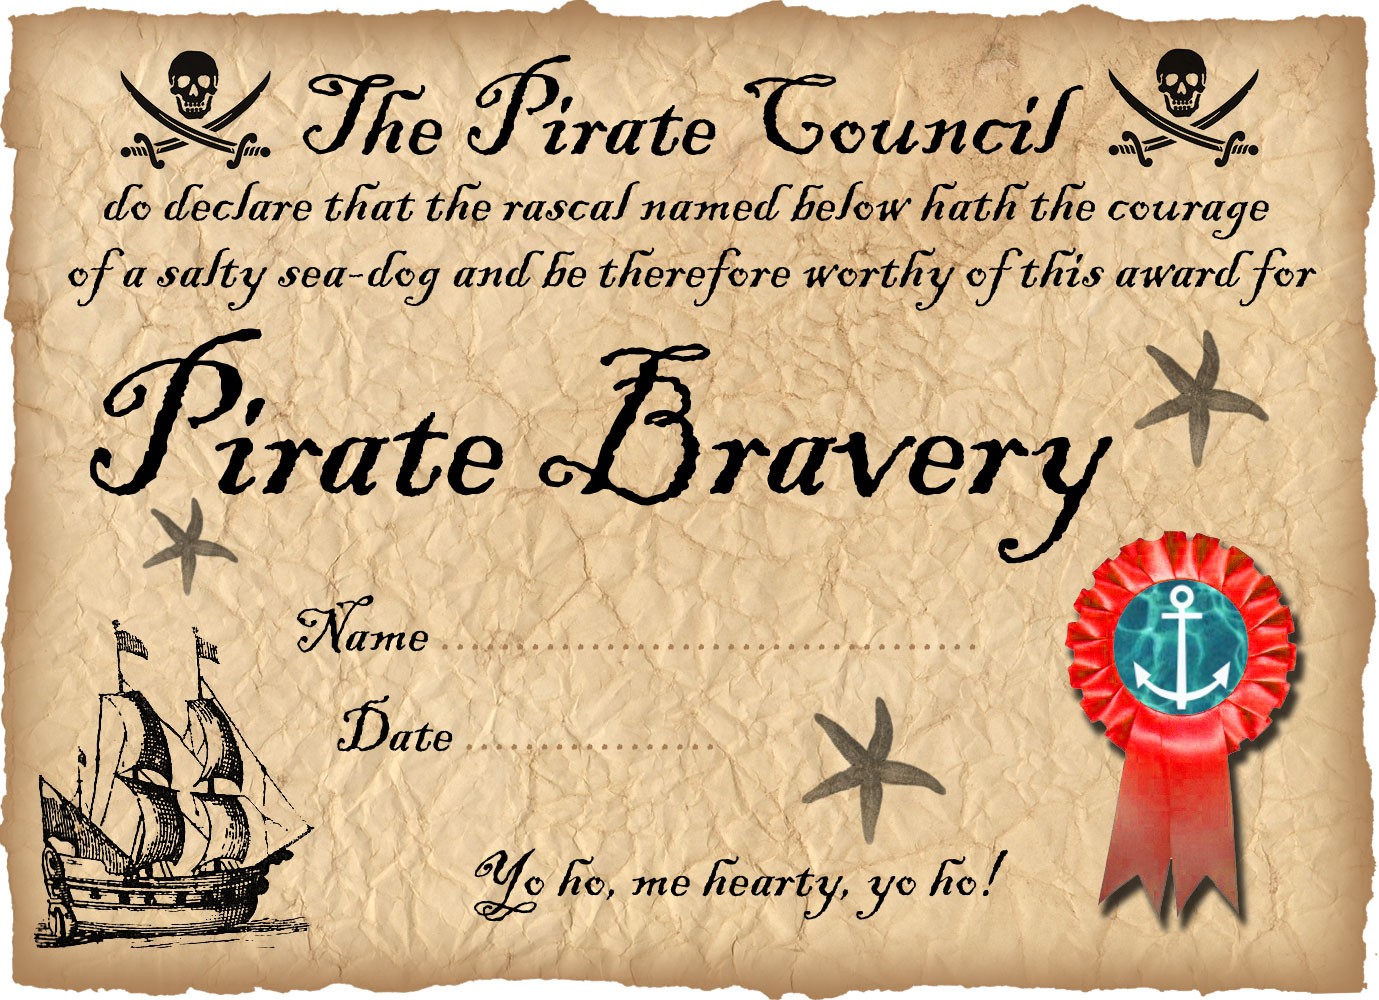 Пиратская жизнь комментарии. Название пиратской вечеринки. Фразы для пиратской вечеринки. Плакат Пиратская вечеринка. Надпись с днём рождения в пиратском стиле.